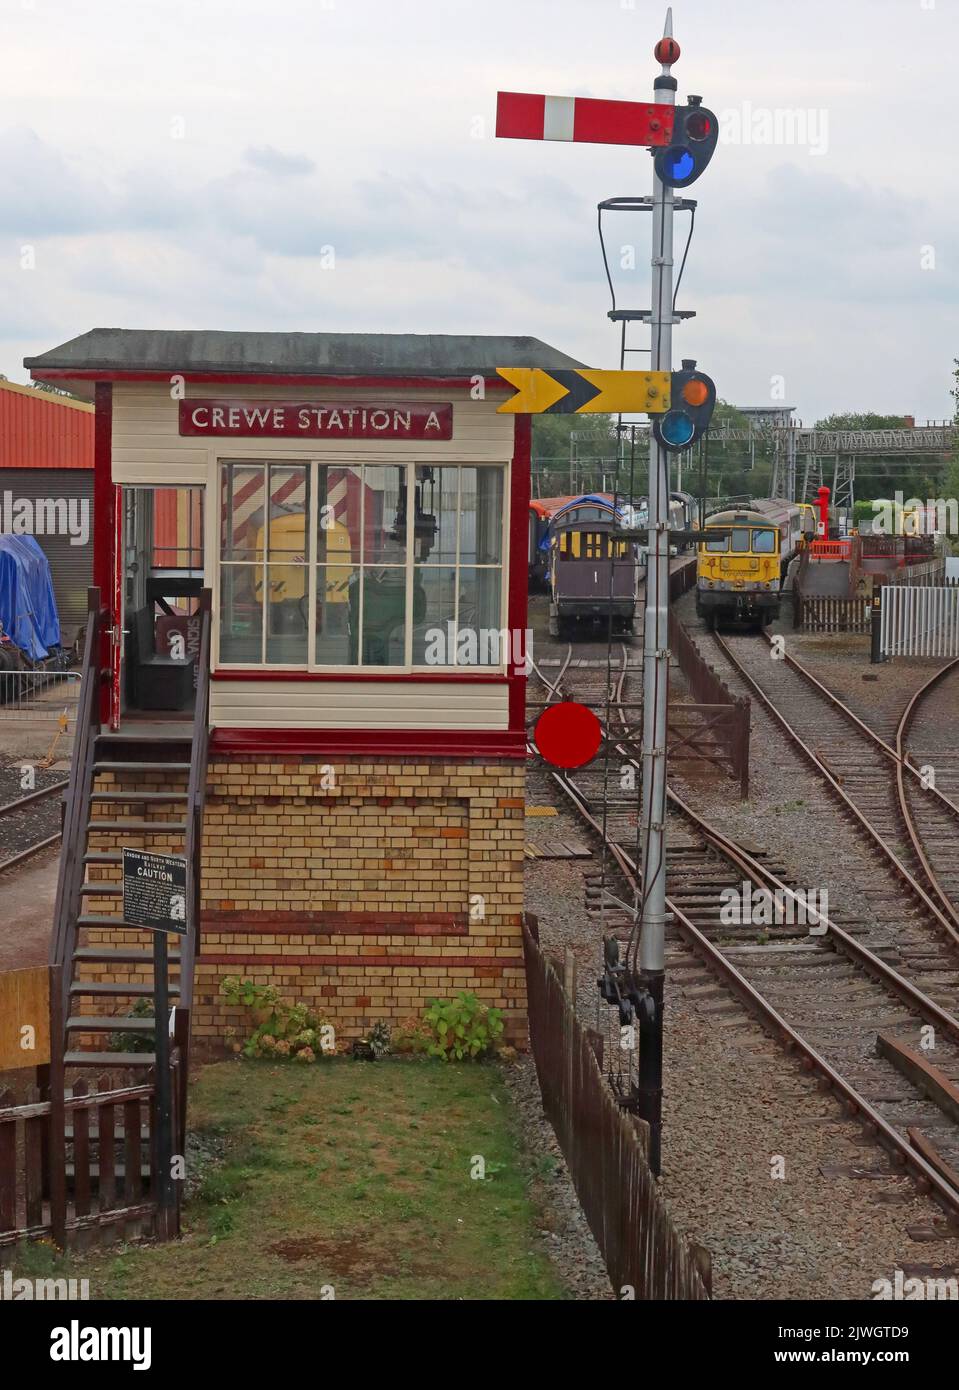 Panneau de chemin de fer victorien traditionnel, Crewe Station A, à Cheshire, Angleterre, Royaume-Uni, CW1 2DB Banque D'Images